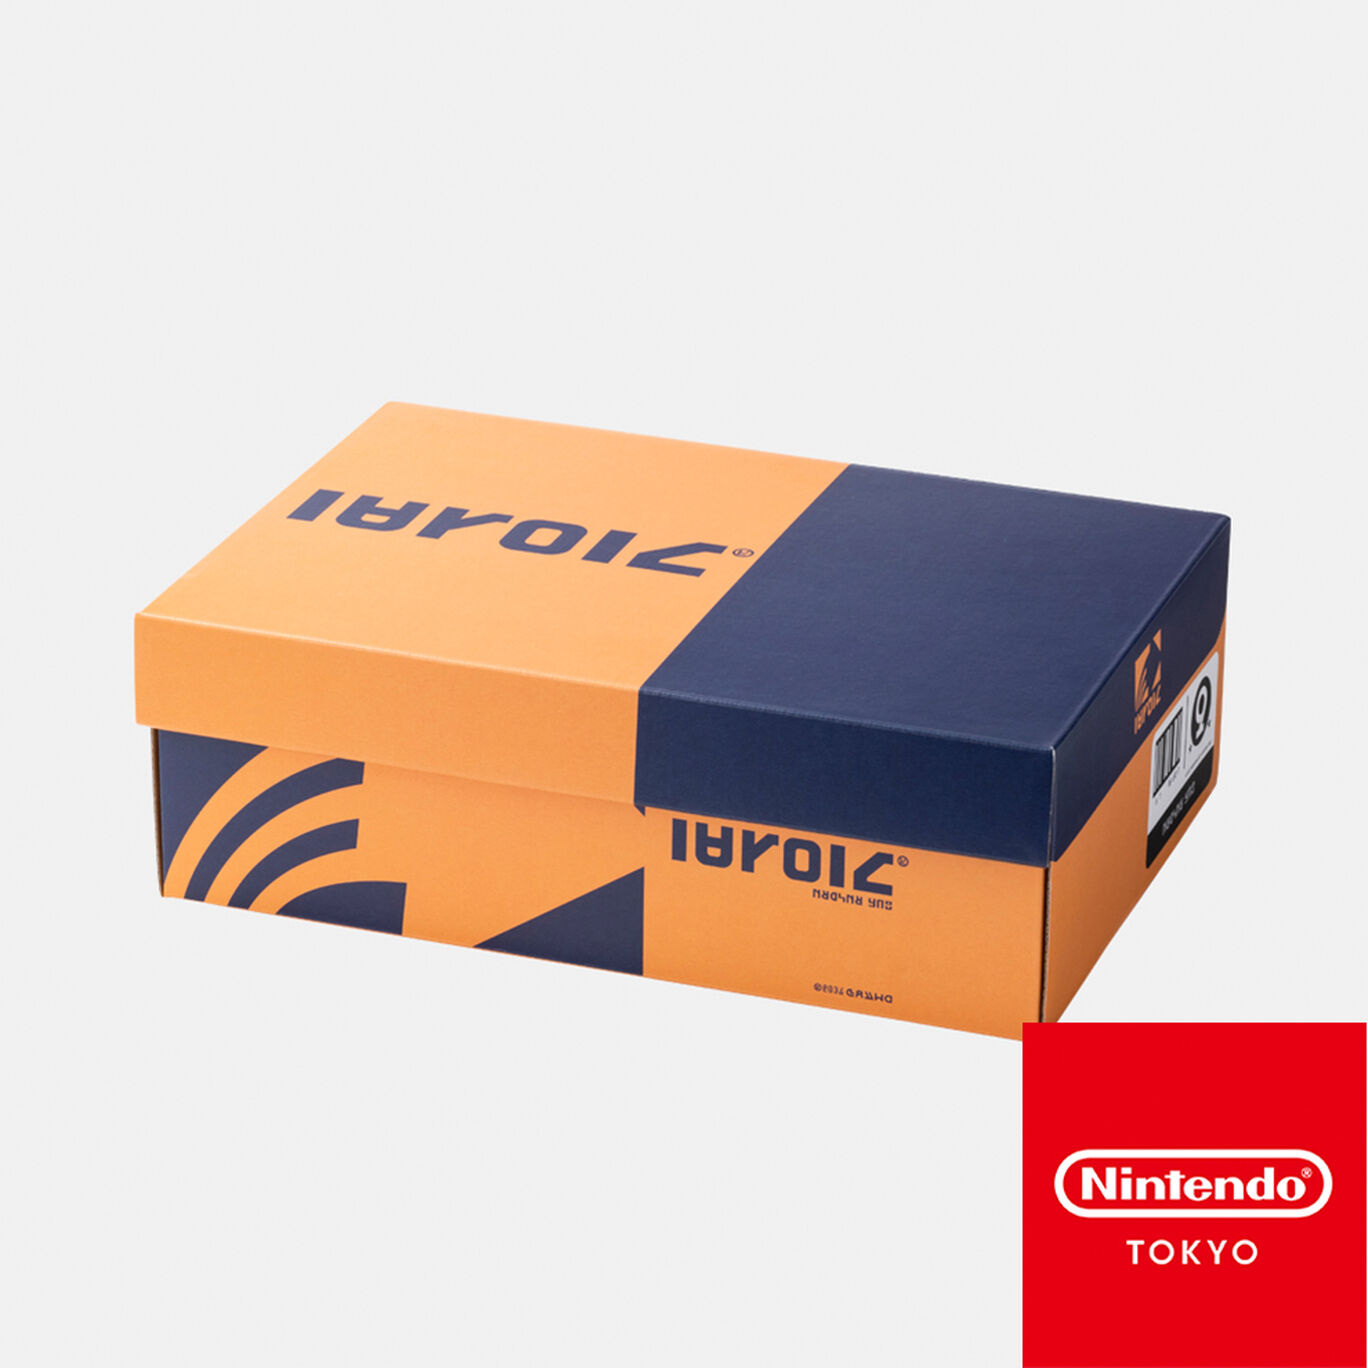 シューズボックス風収納BOX CROSSING SPLATOON D【Nintendo TOKYO取り扱い商品】